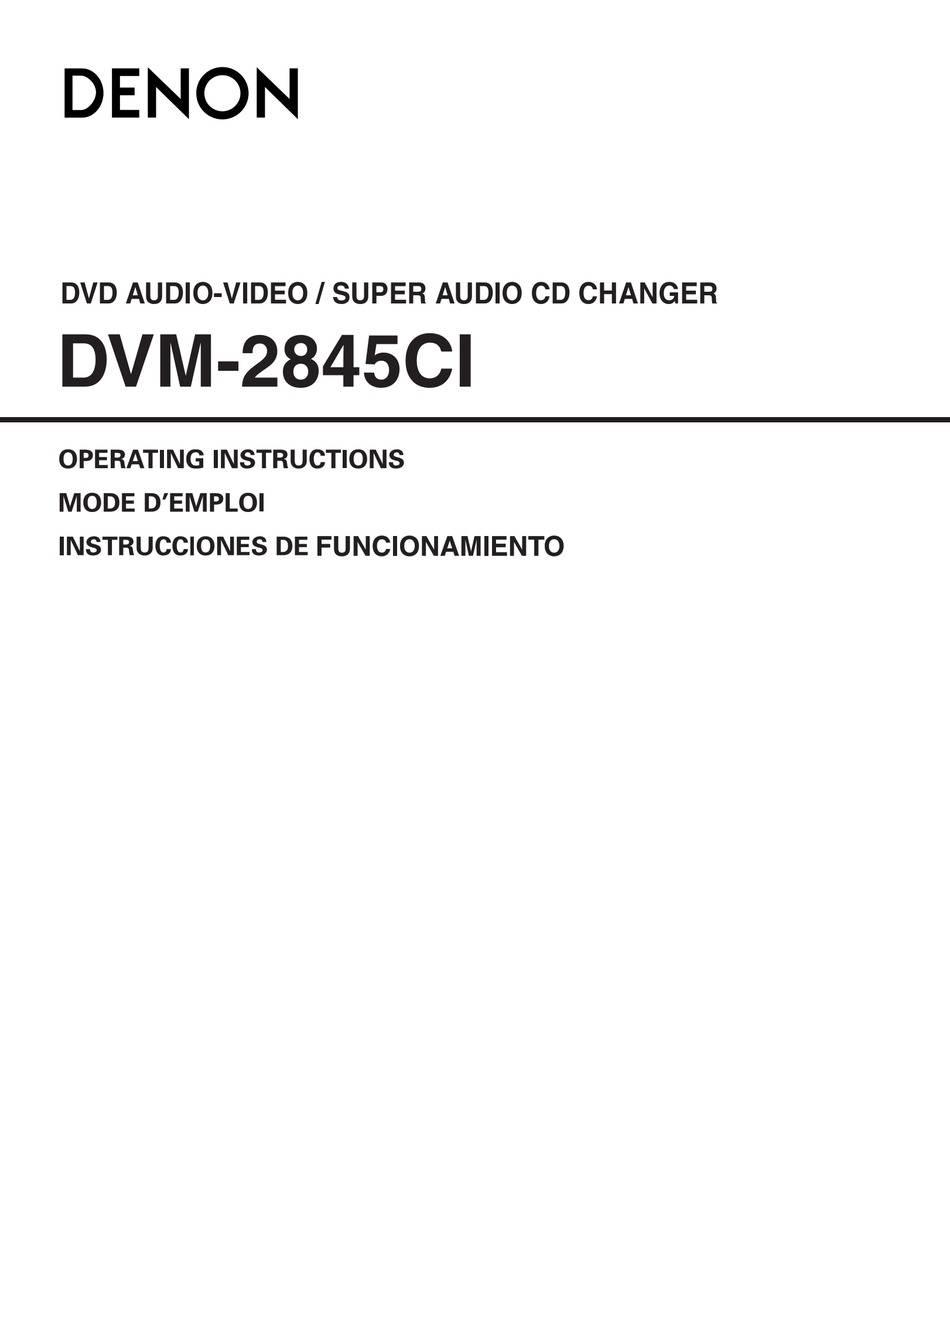 Denon DVM-2845 (2845CI)